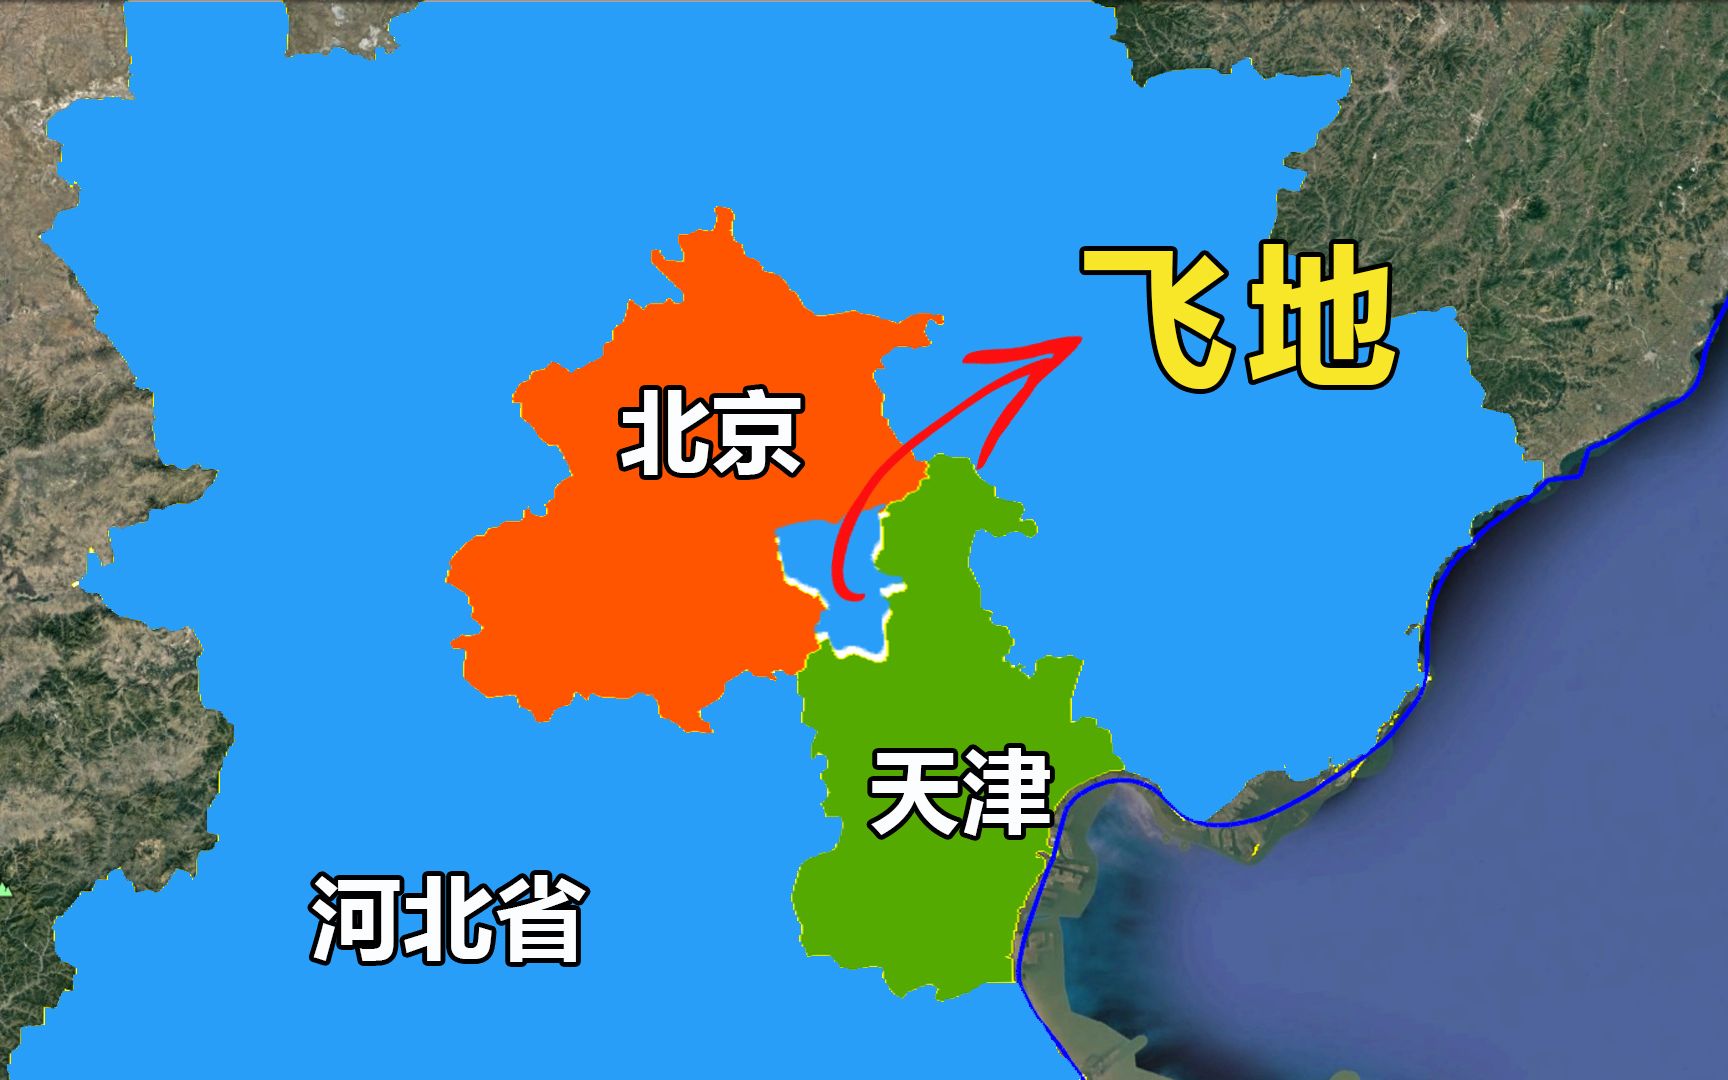 中国最大飞地,被北京和天津包围的河北省北三县,是如何形成的?